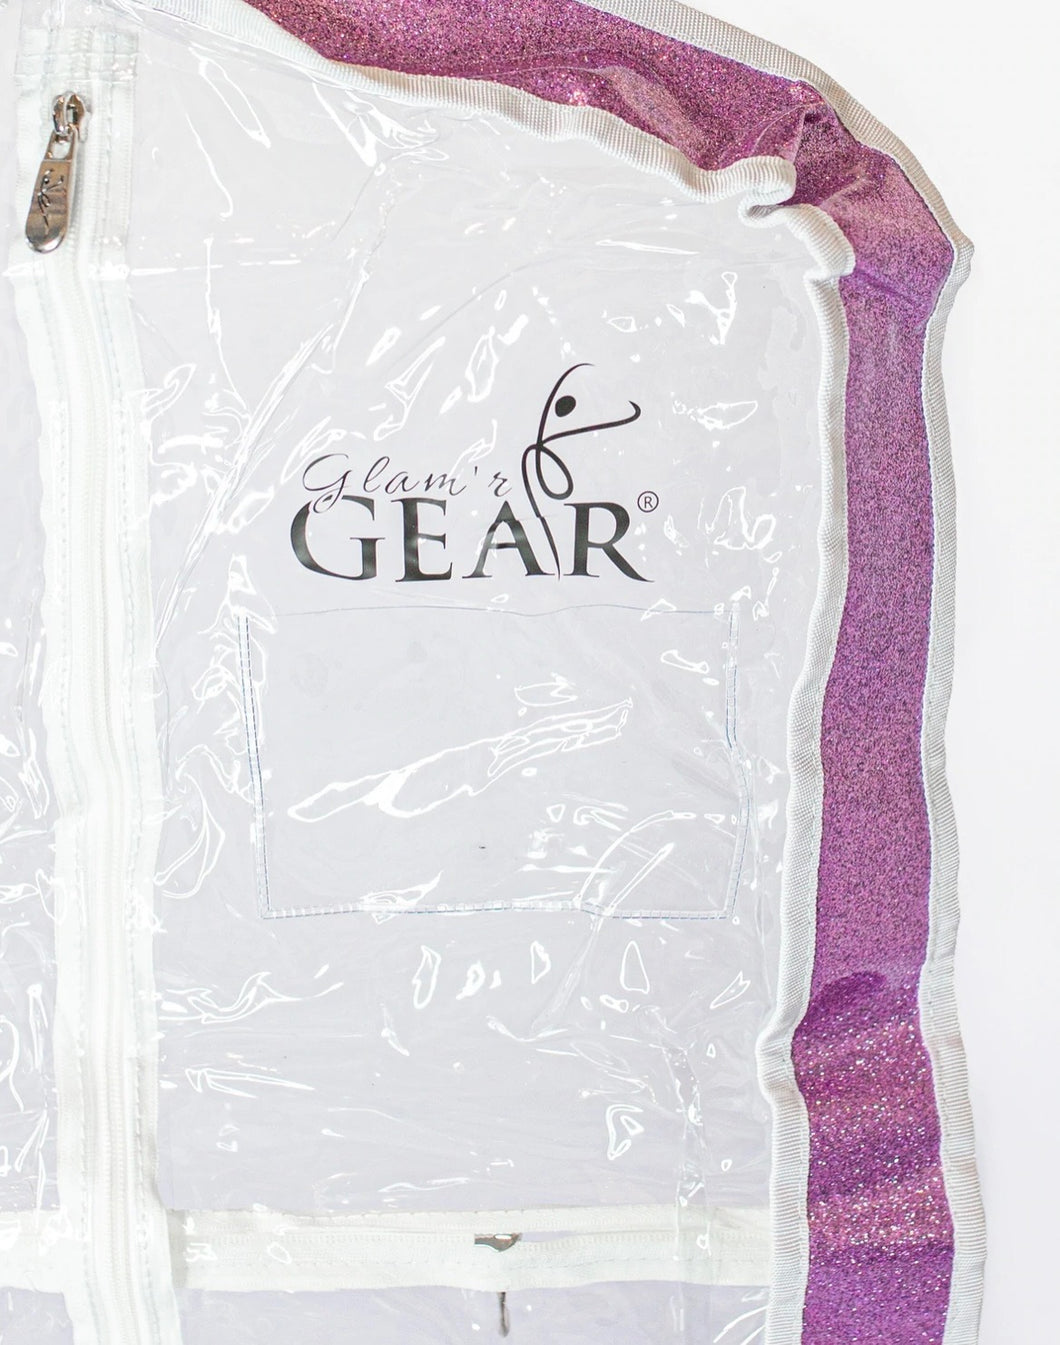 Glam’r Gear Garment Bag